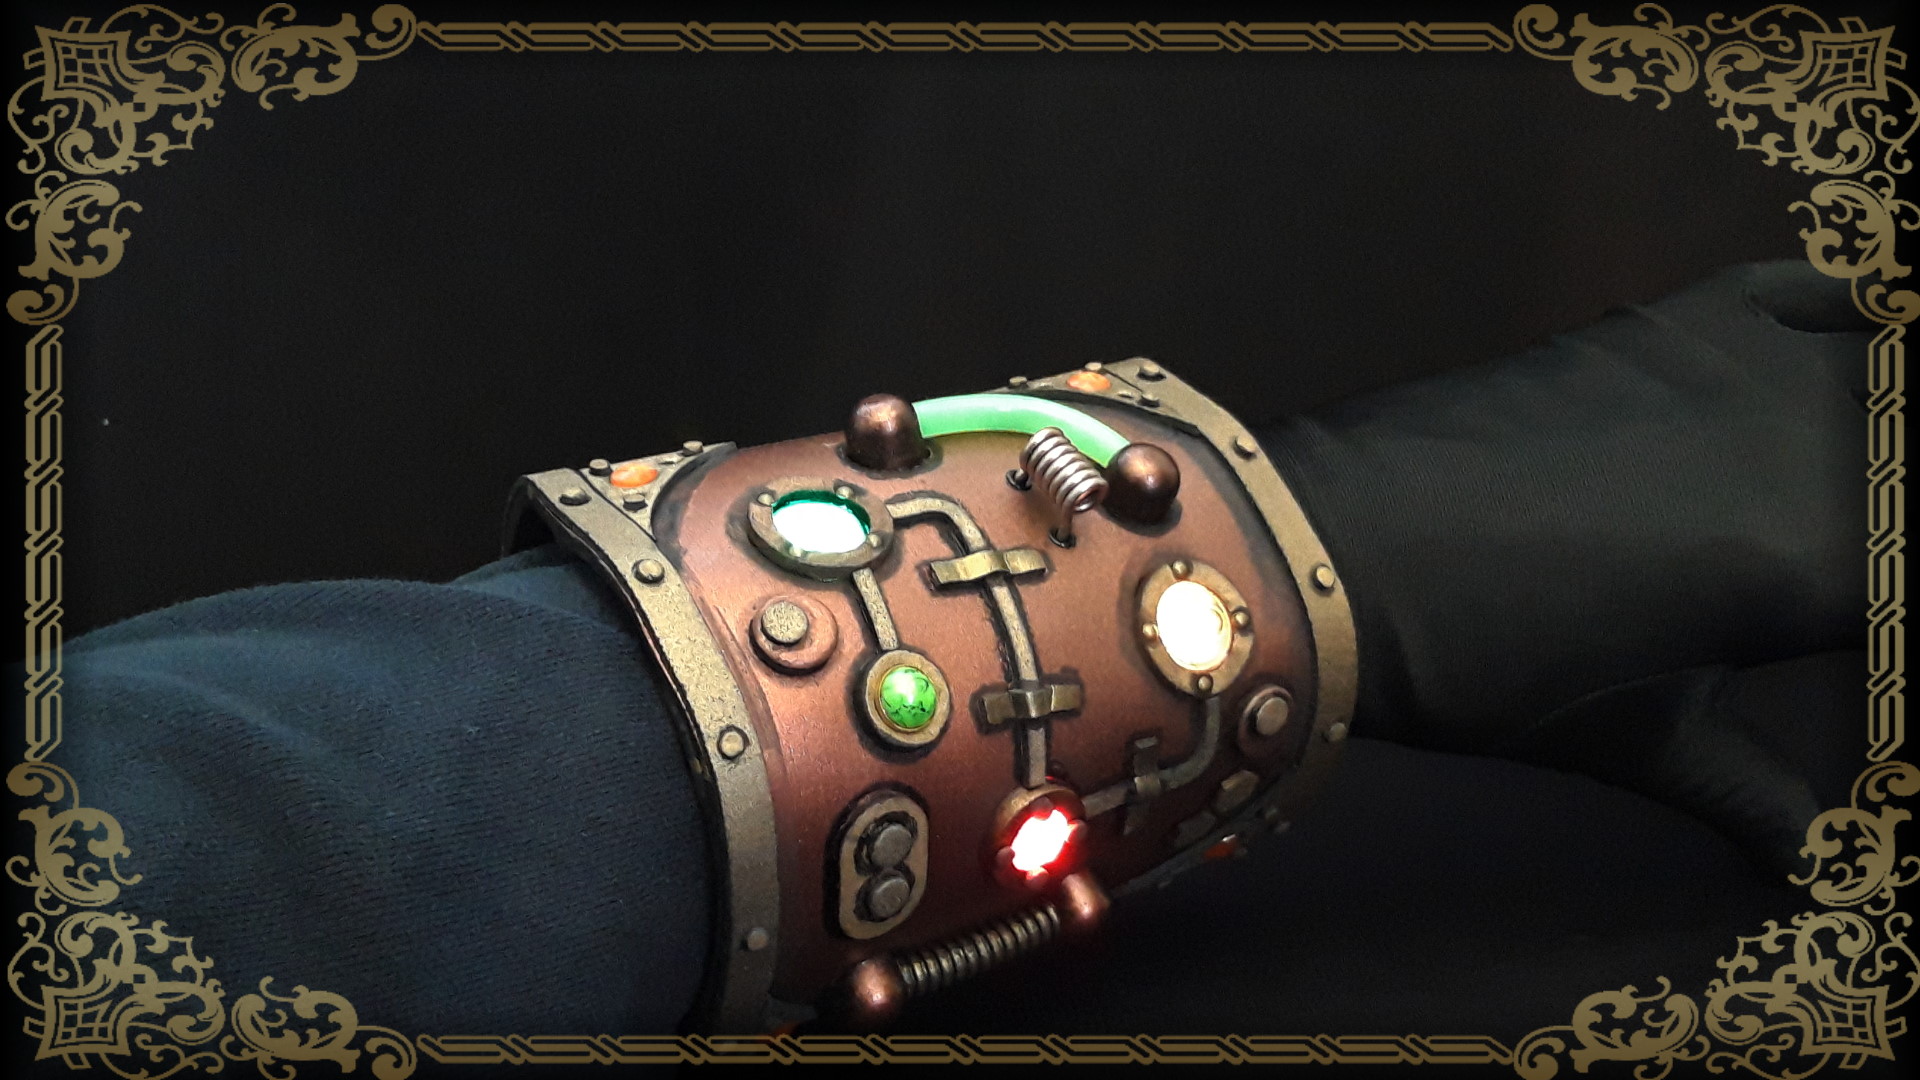 Steampunk Large Wristband